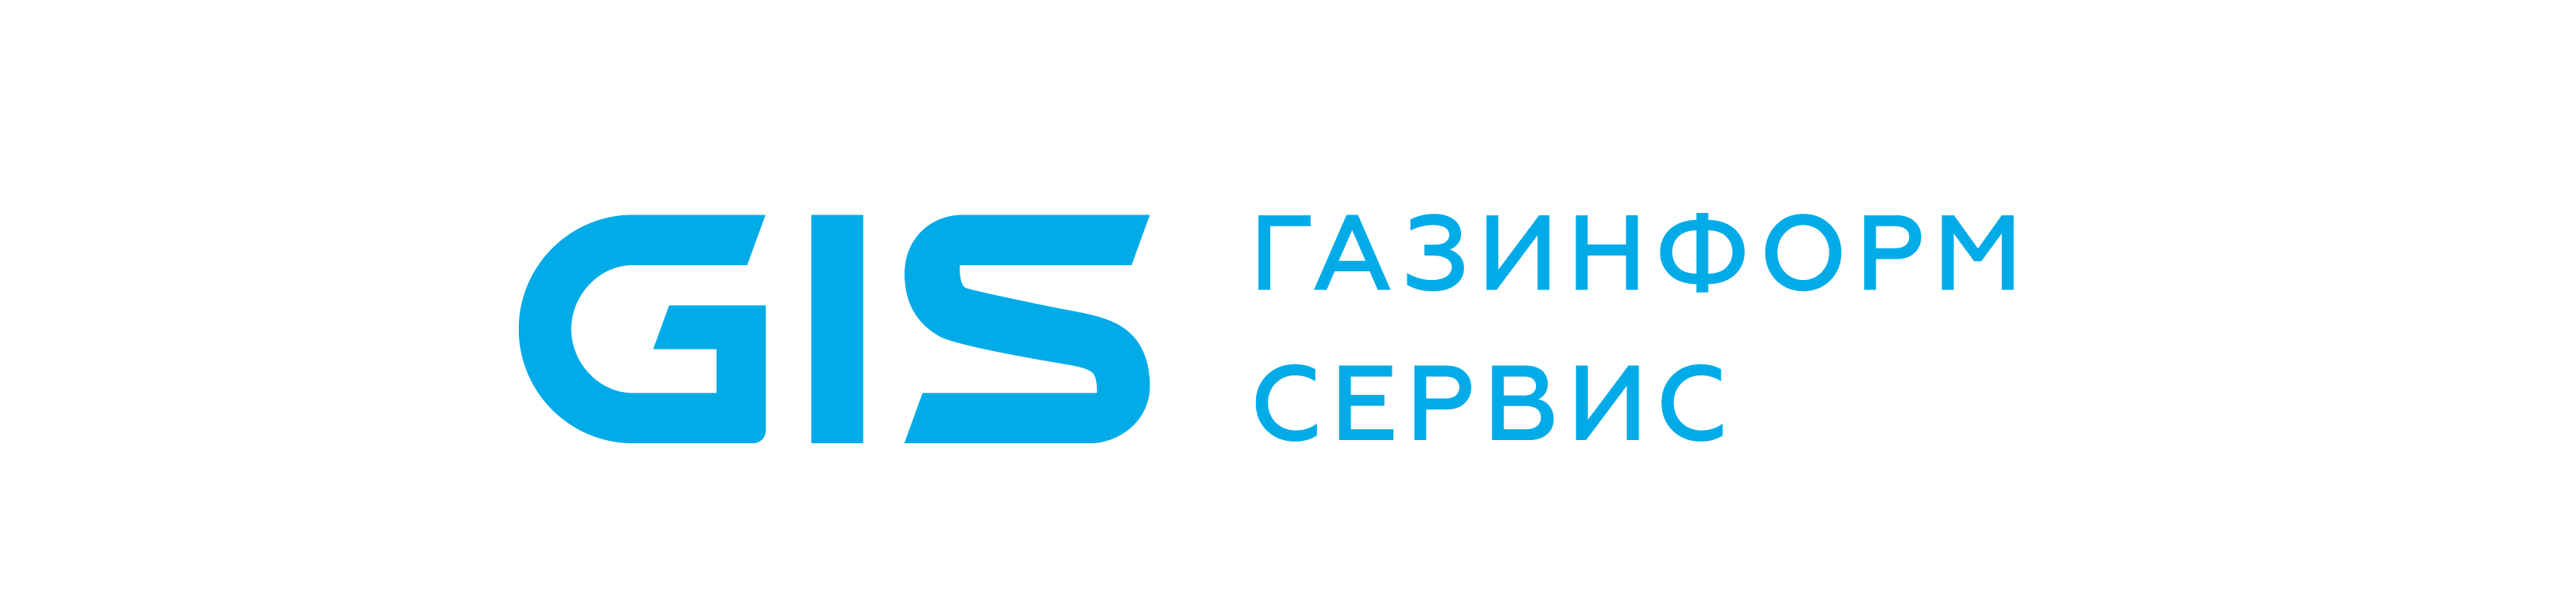 techpartner-logo